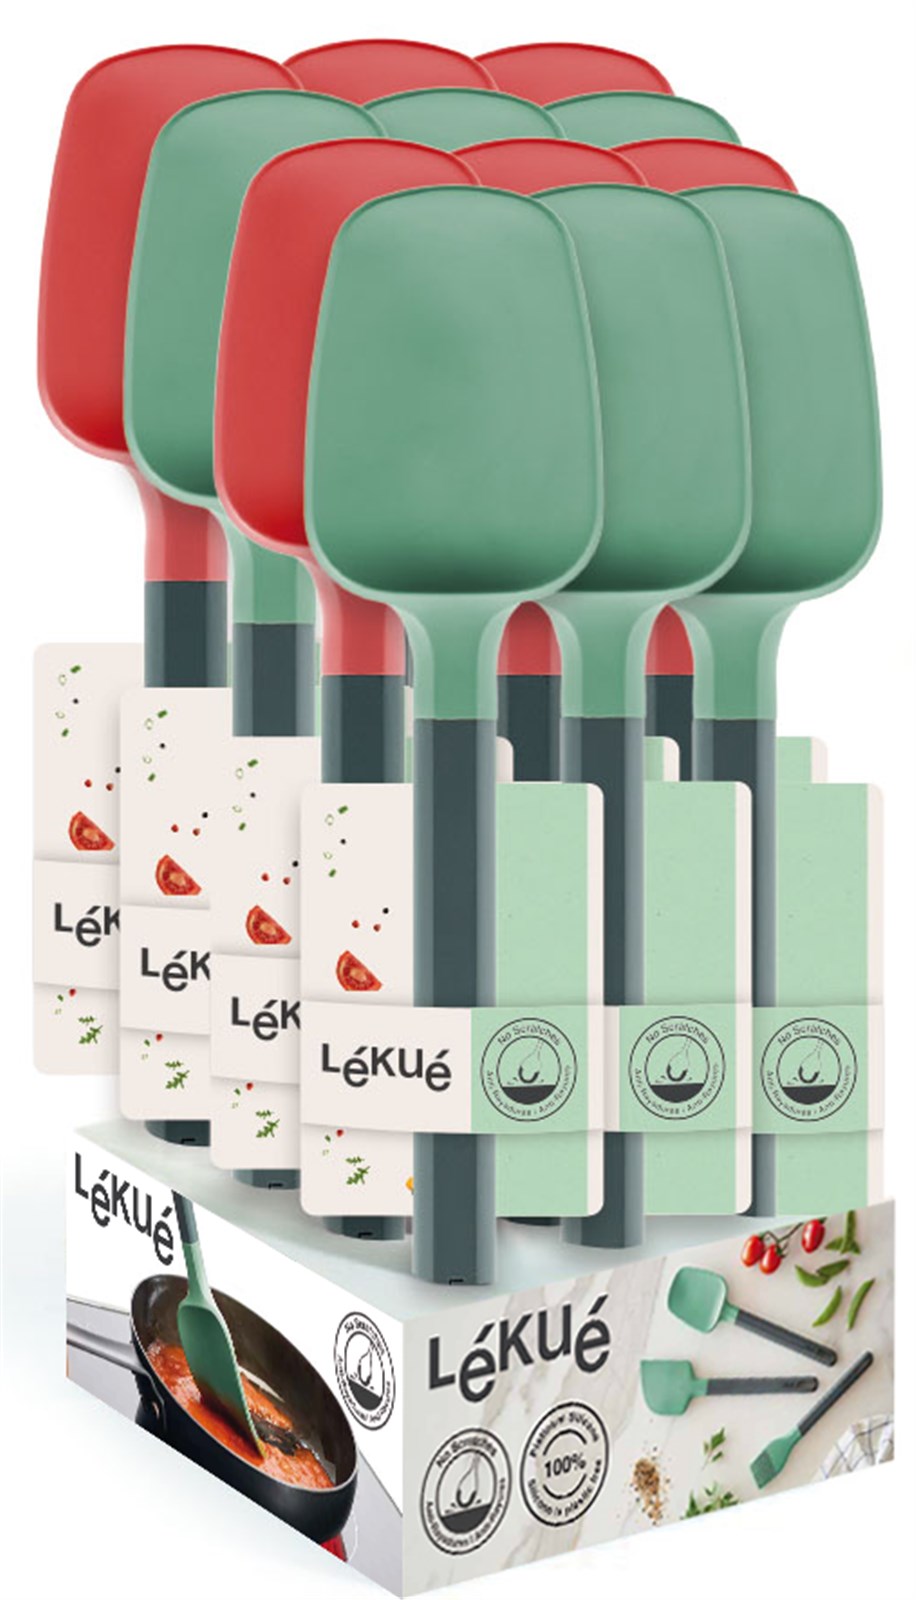 Display Löffel-Spachtel Grün & Rot in Mehrfarbig präsentiert im Onlineshop von KAQTU Design AG. Backen ist von Lékué